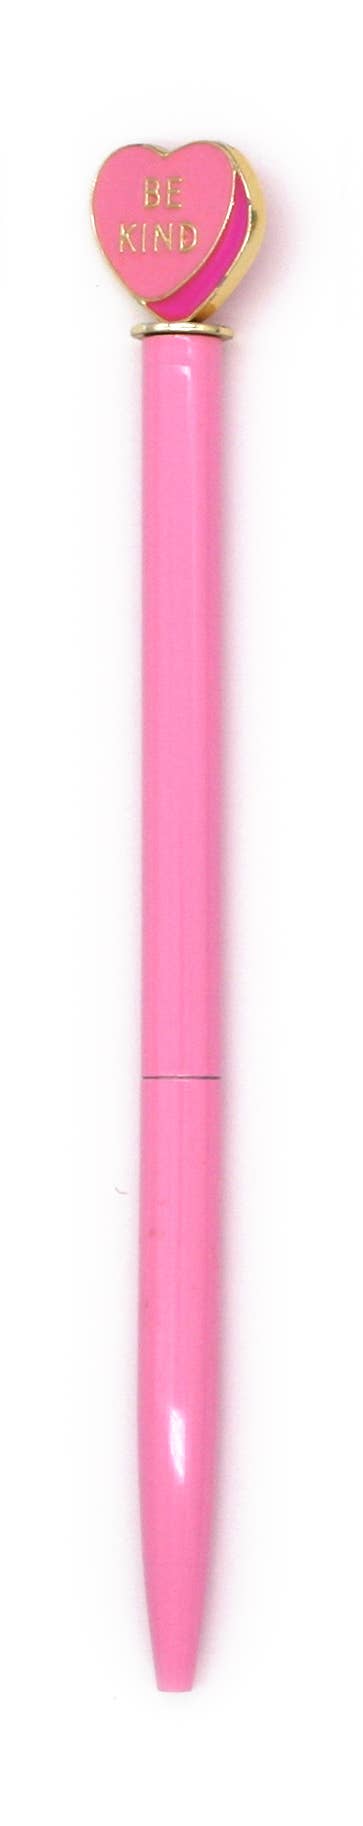 Enamel Heart Charm Pen - Pink